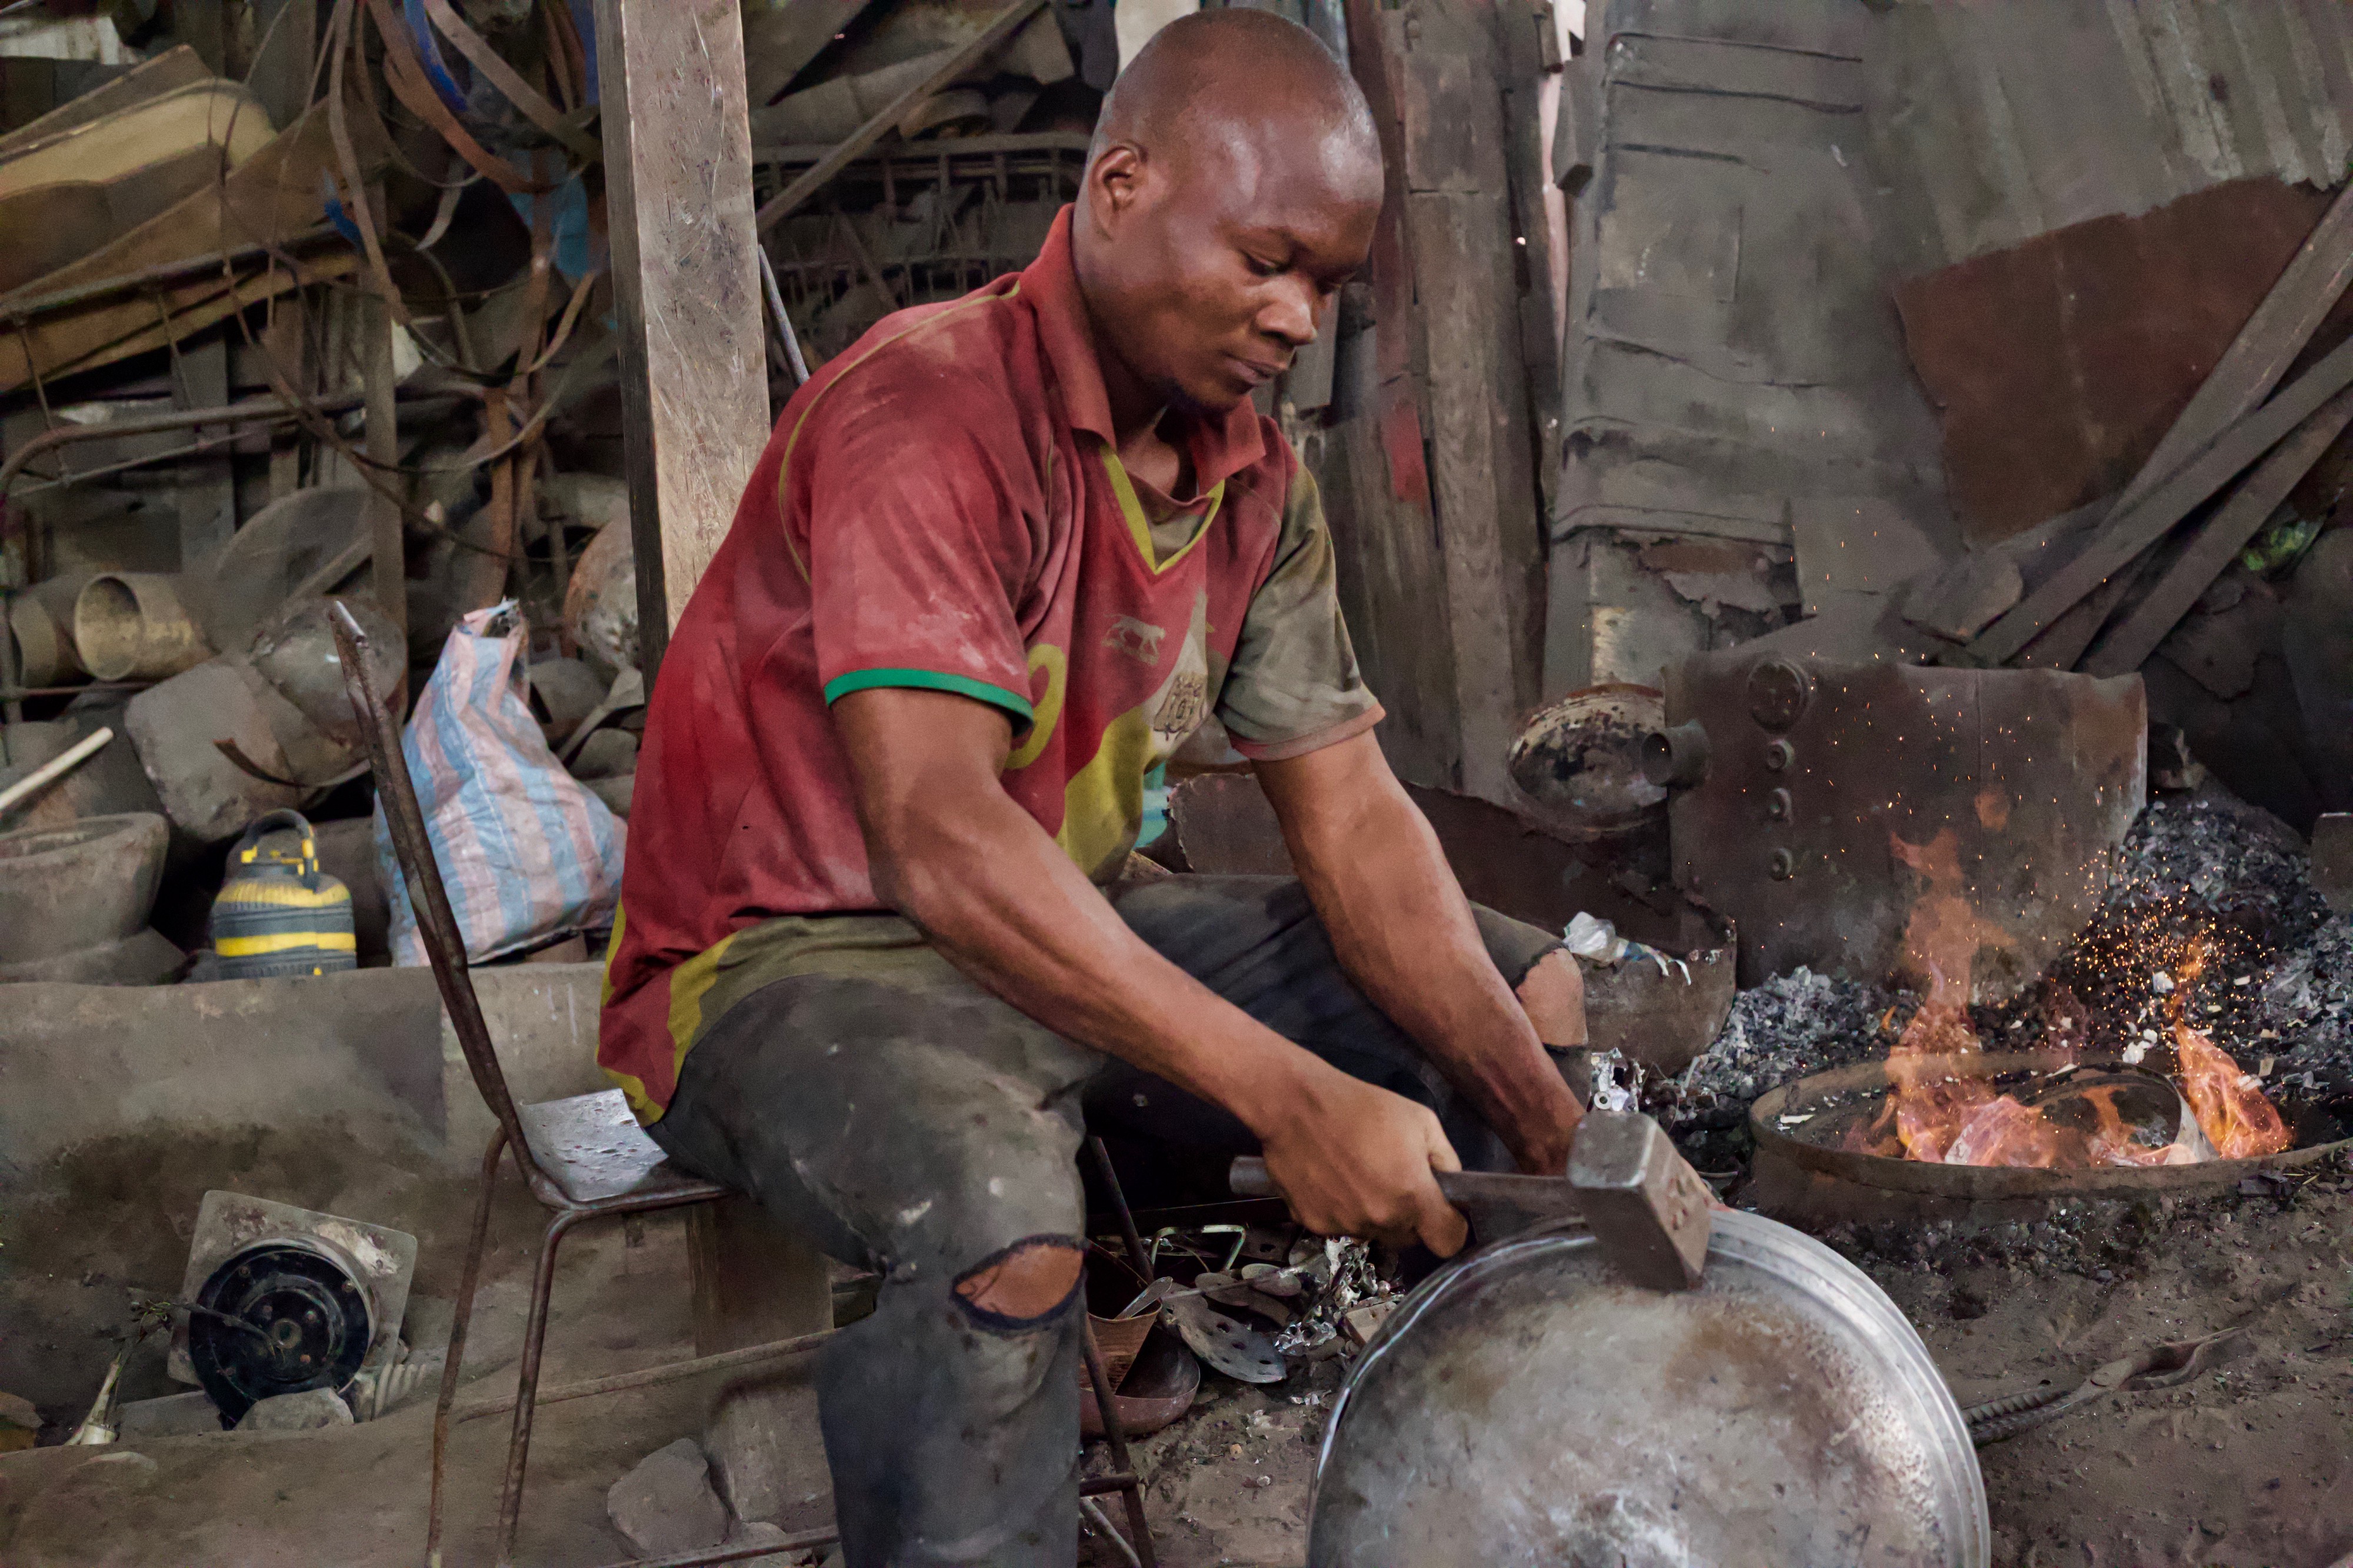 An African man working